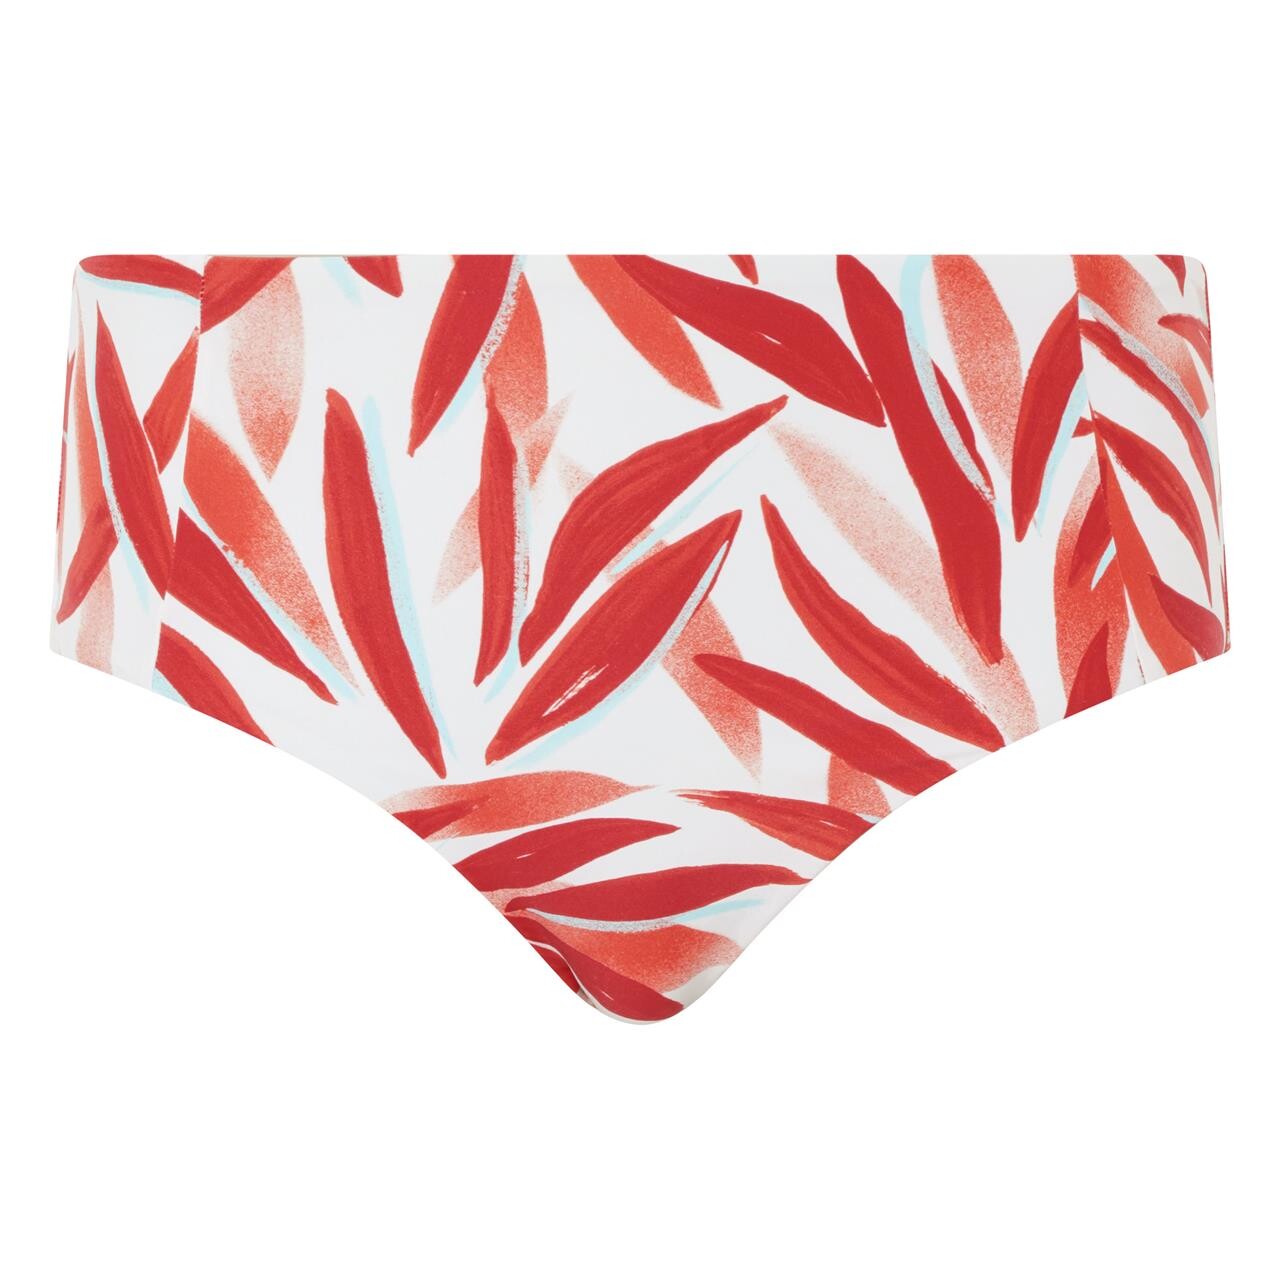 Femilet Bikini Trusse Fs-fg, Farve: Rød Leaves, Størrelse: 48, Dame